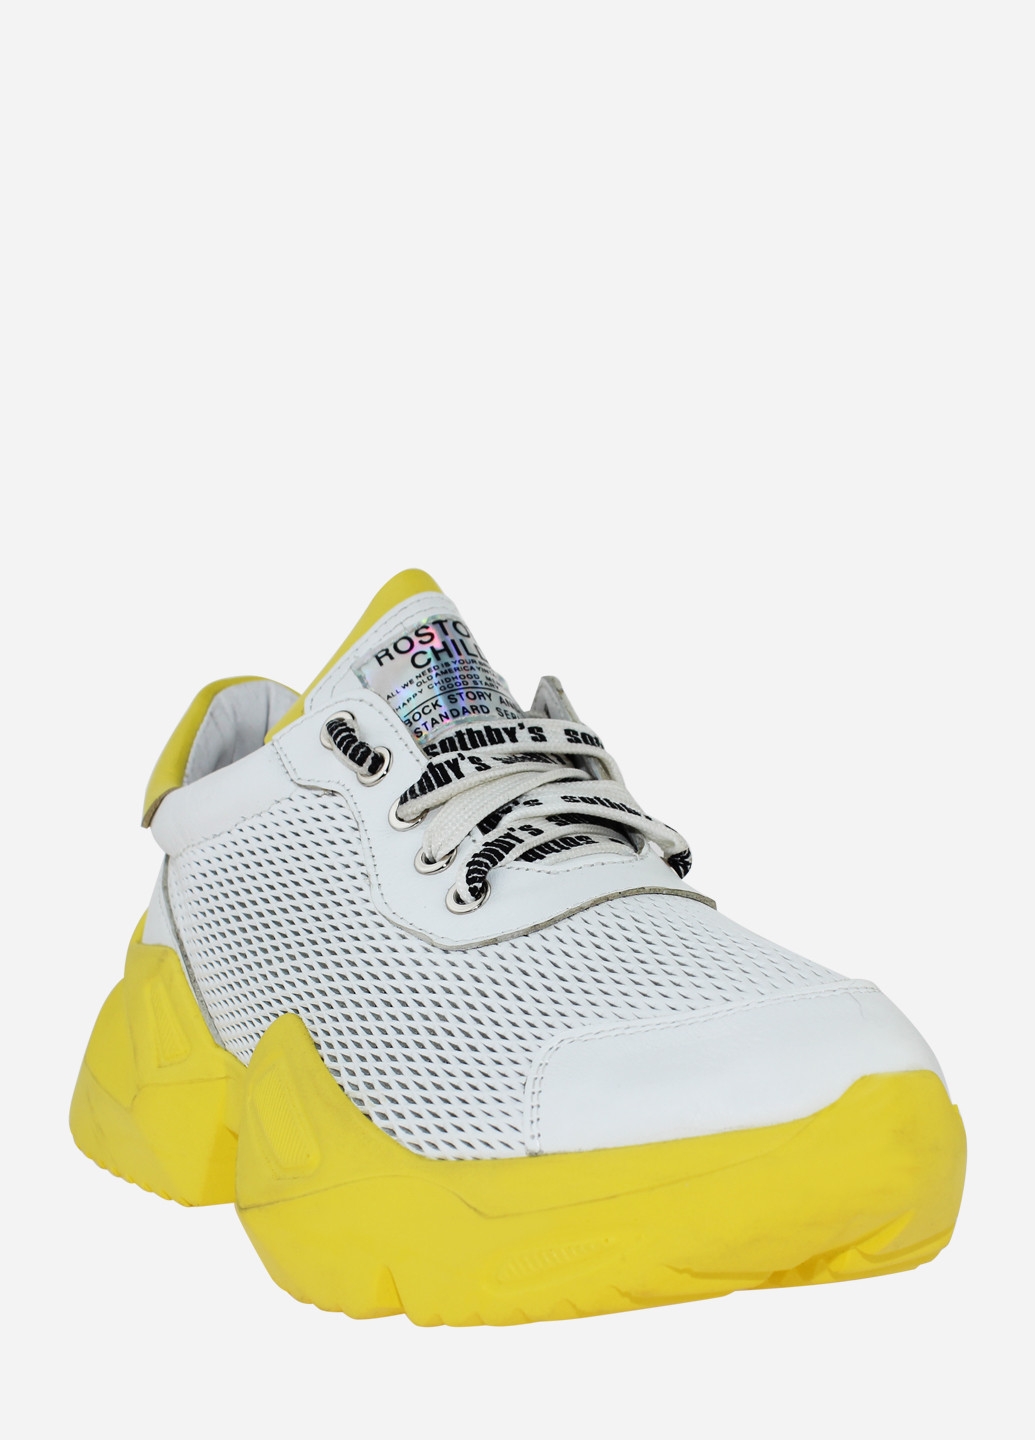 Белые демисезонные кроссовки rsm-514 белый-жёлтый Sothby's